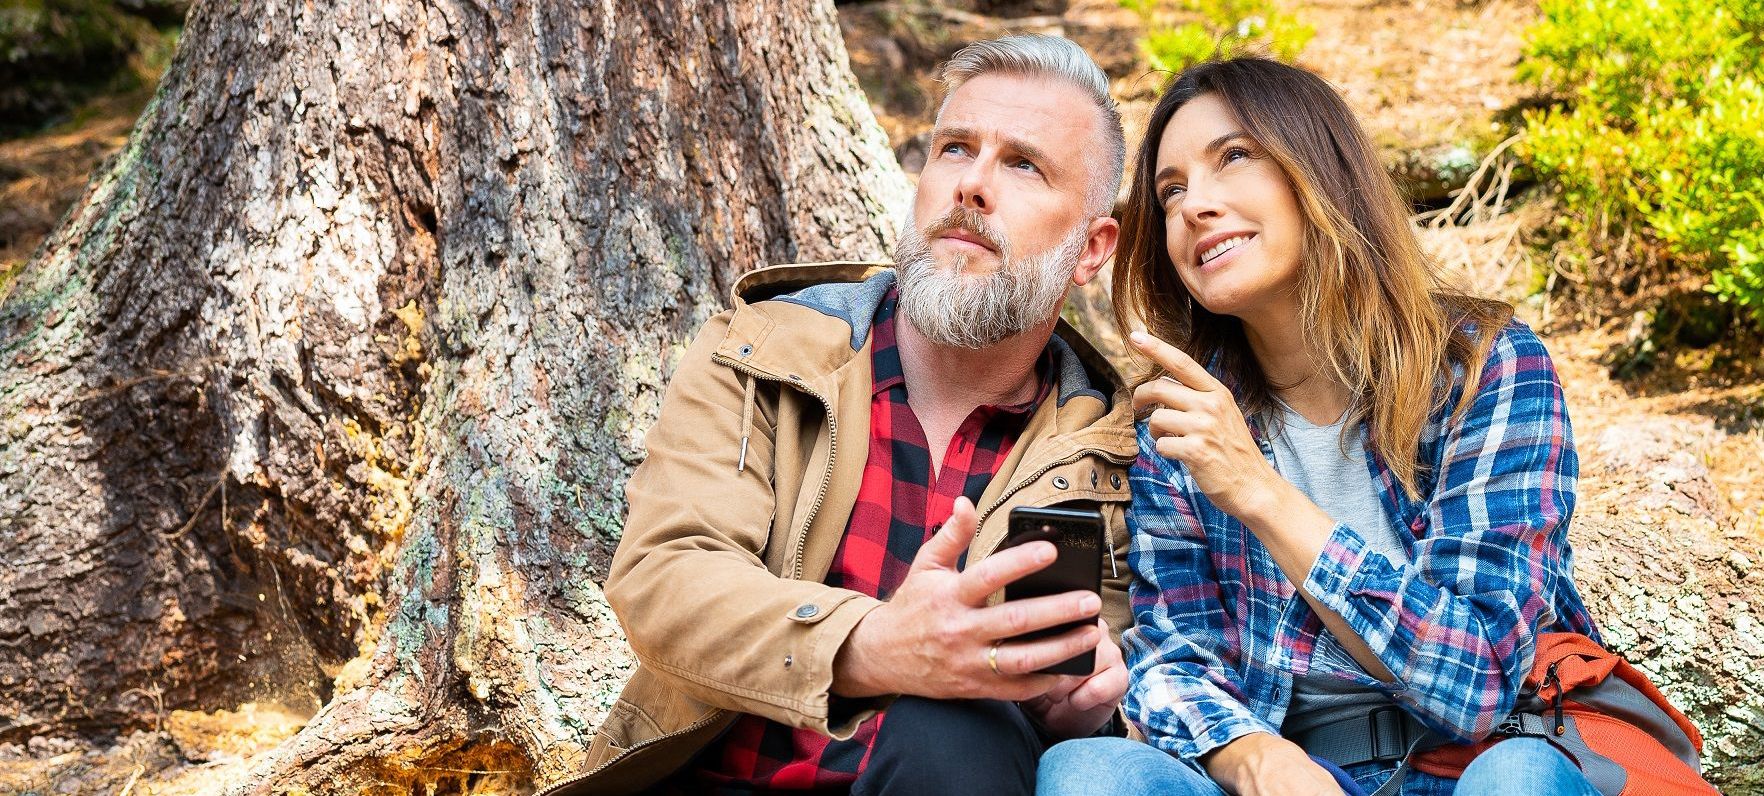 Frau und Mann mit Smartphone im Wald